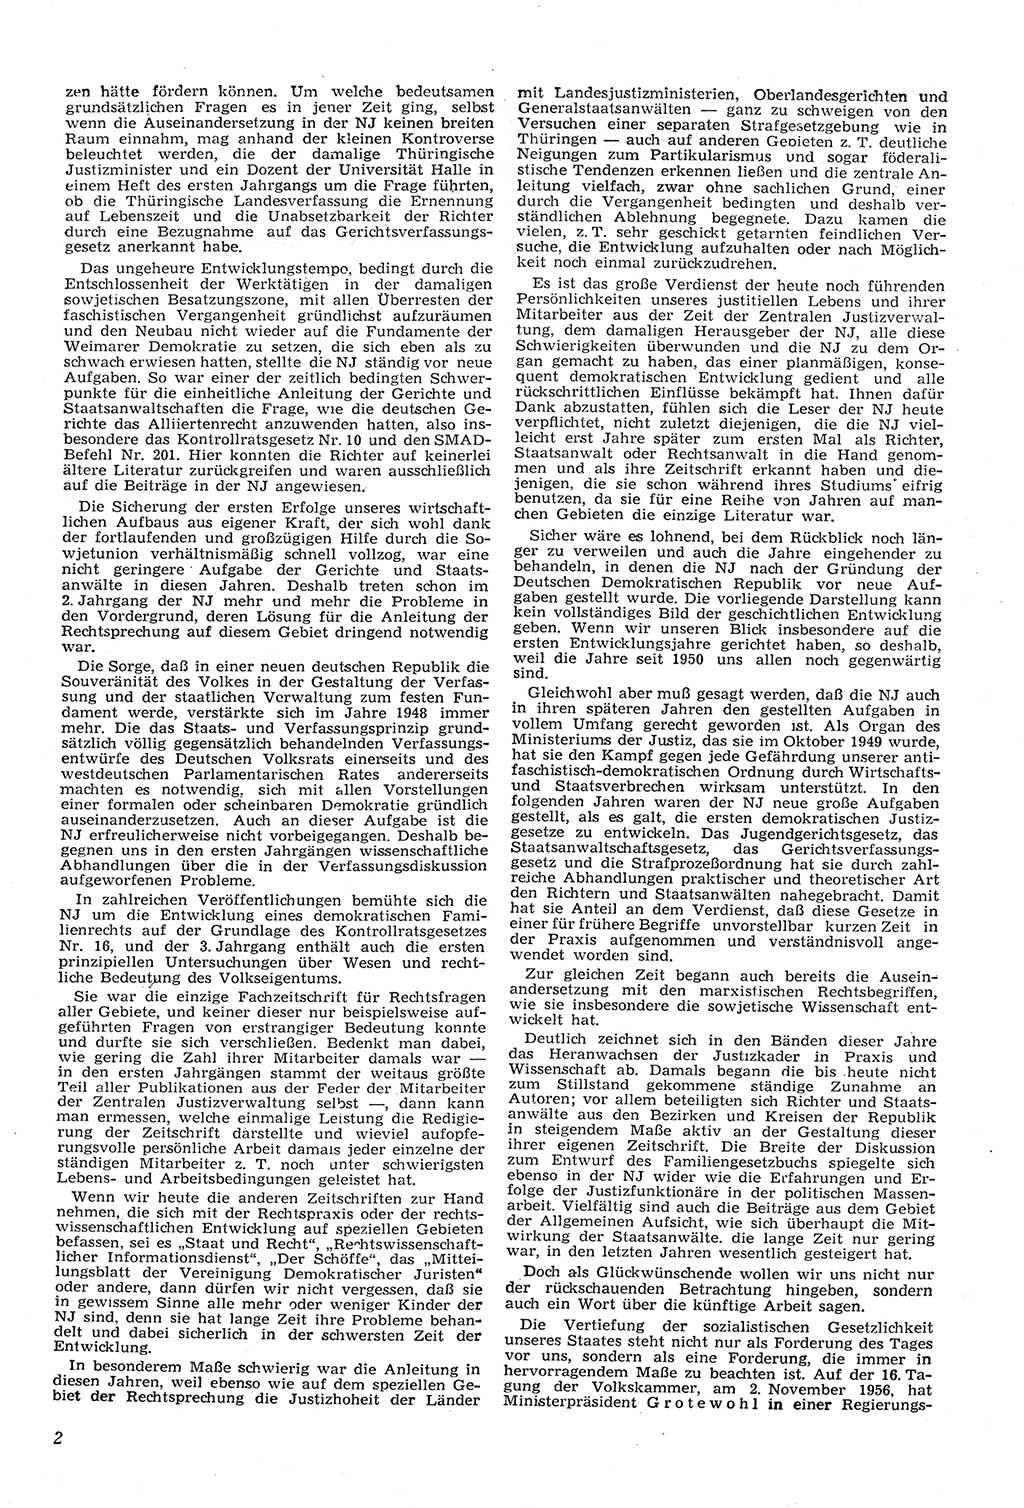 Neue Justiz (NJ), Zeitschrift für Recht und Rechtswissenschaft [Deutsche Demokratische Republik (DDR)], 11. Jahrgang 1957, Seite 2 (NJ DDR 1957, S. 2)